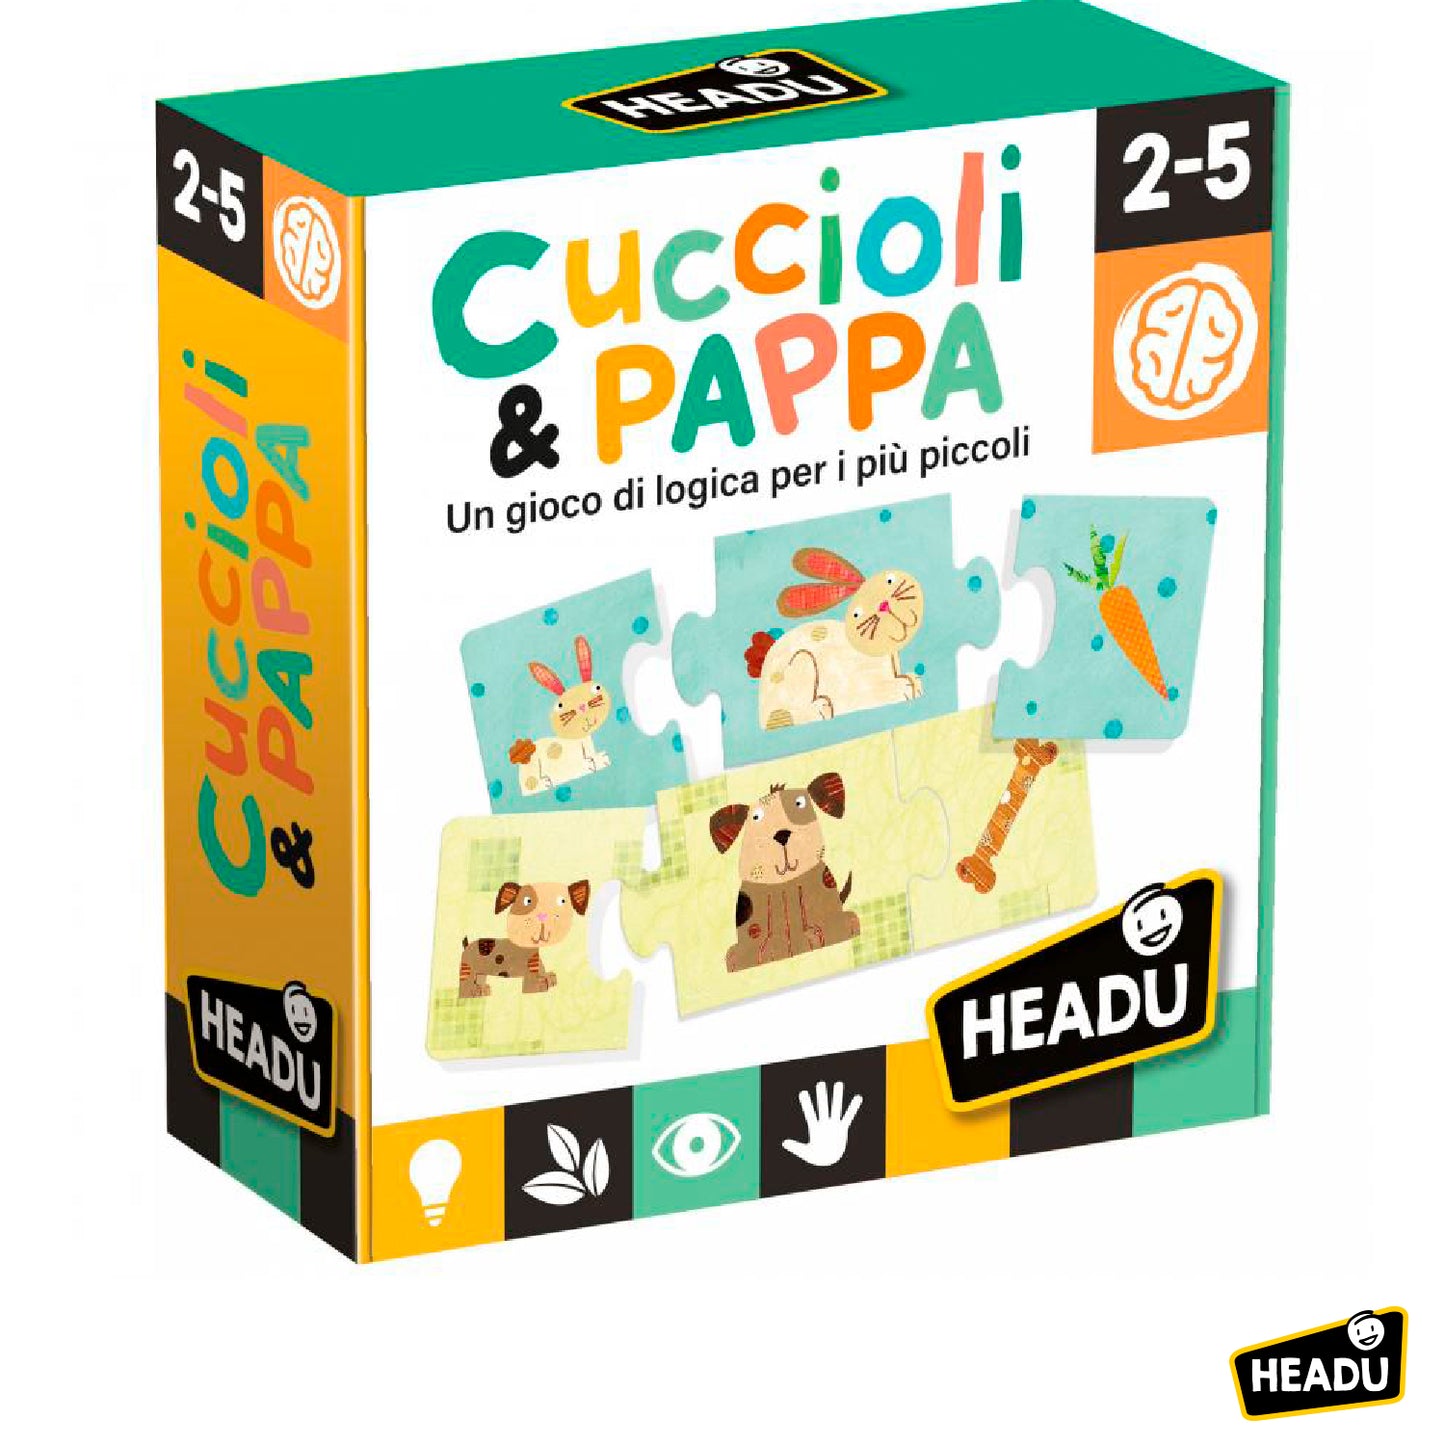 Headu - Cuccioli & Pappa IT20058